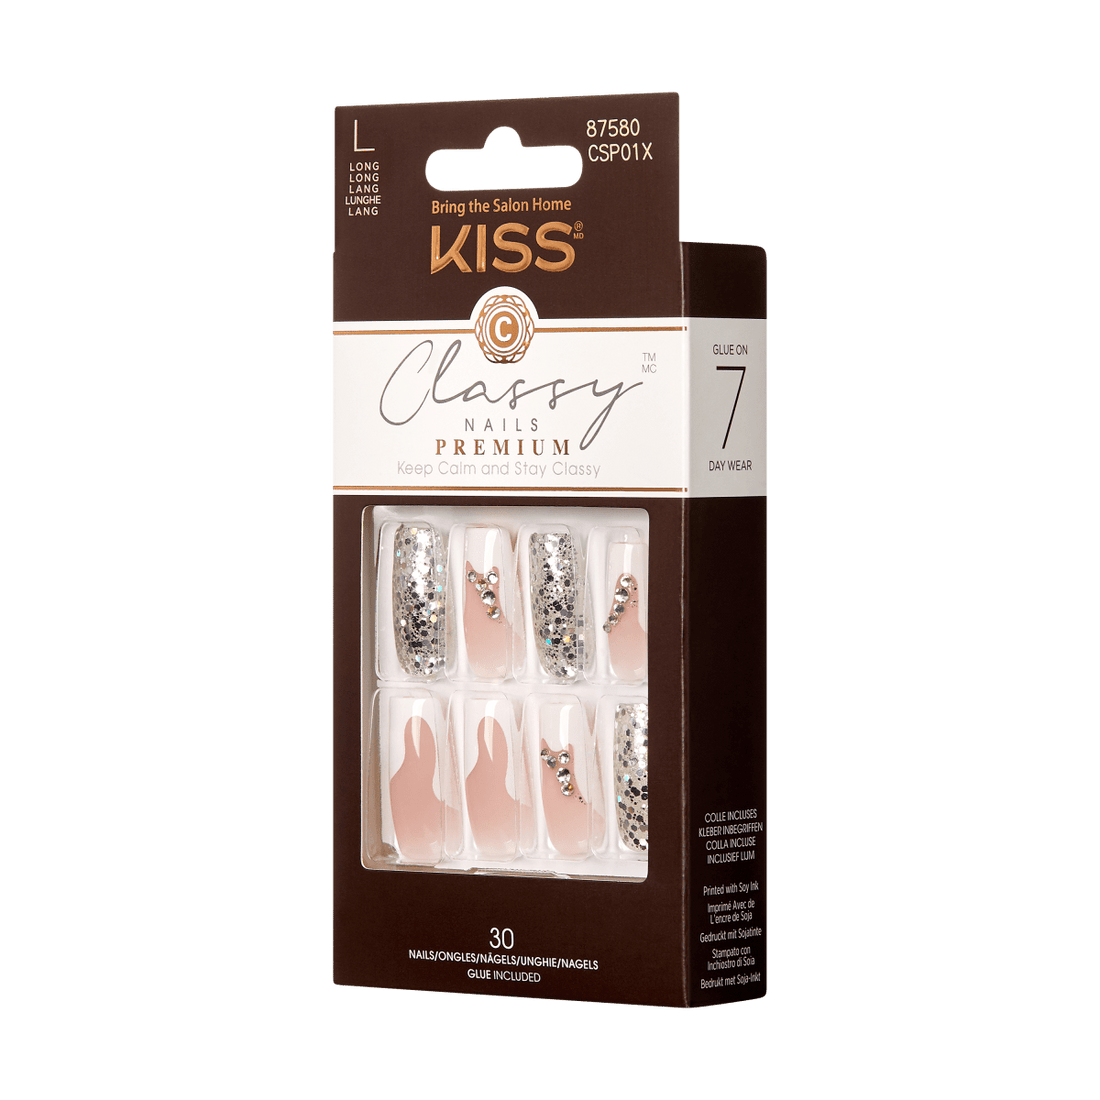 KISS Classy Nails Premium, Press-On Nails, Goddess, White, Long Coffin, 30ct